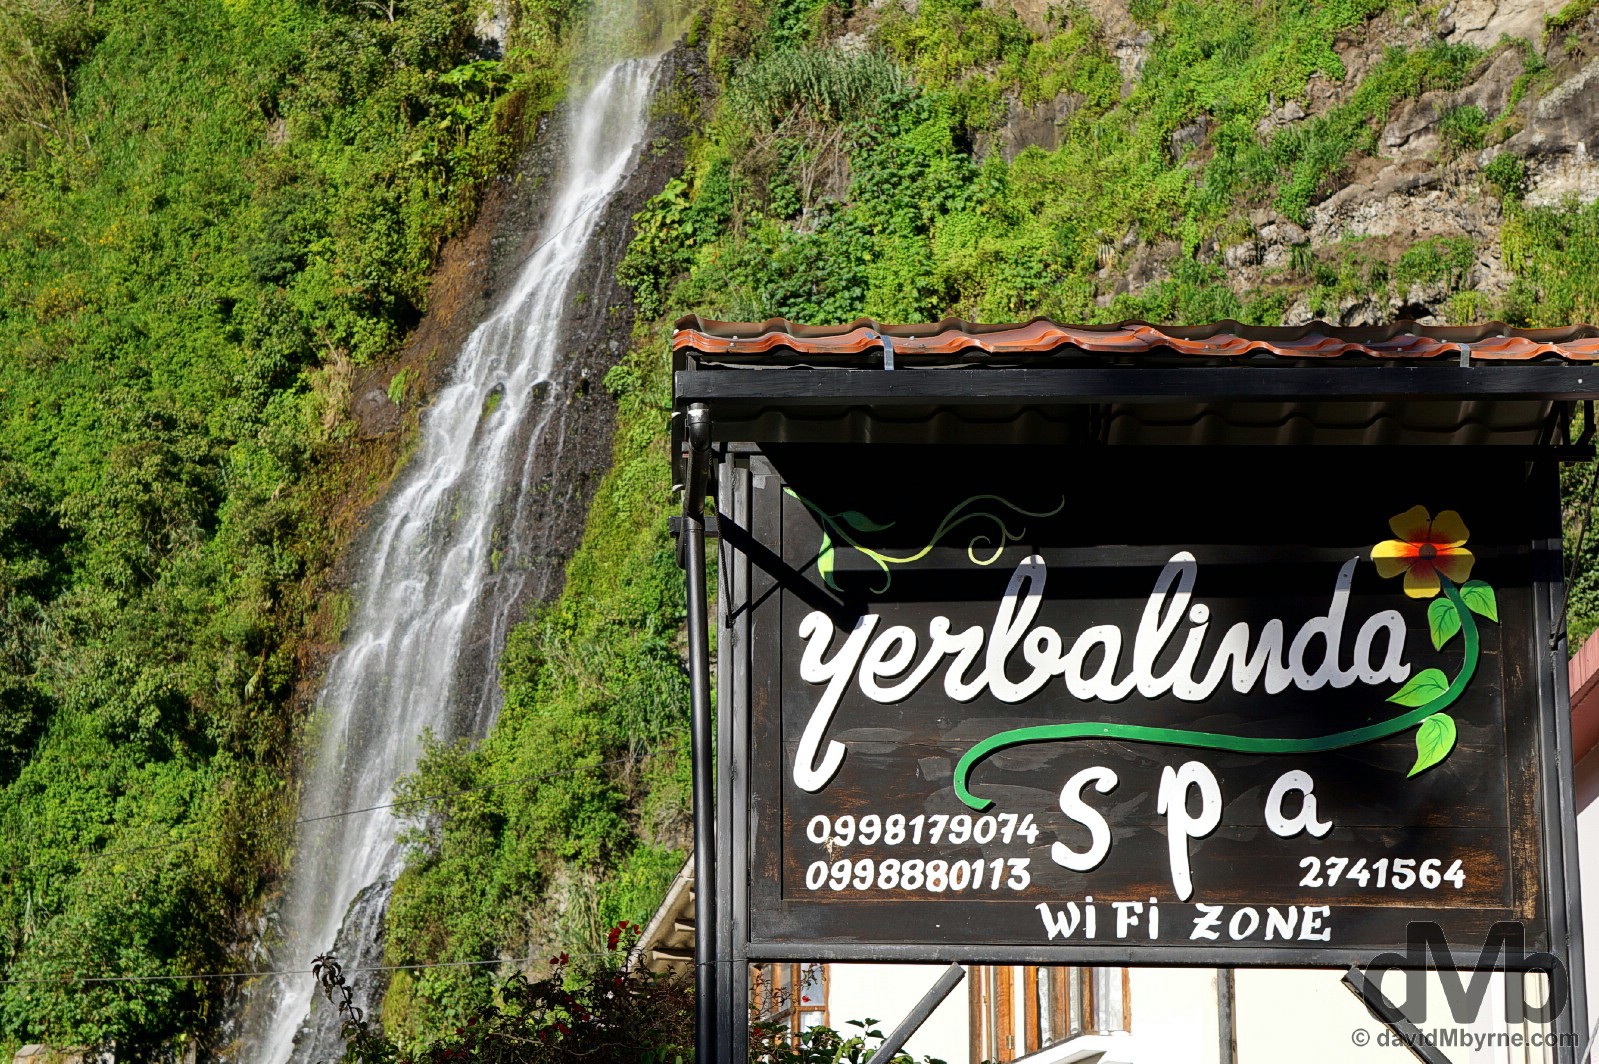 Waterfalls & spa resorts. That's Banos, Ecuador. July 9, 2015. 